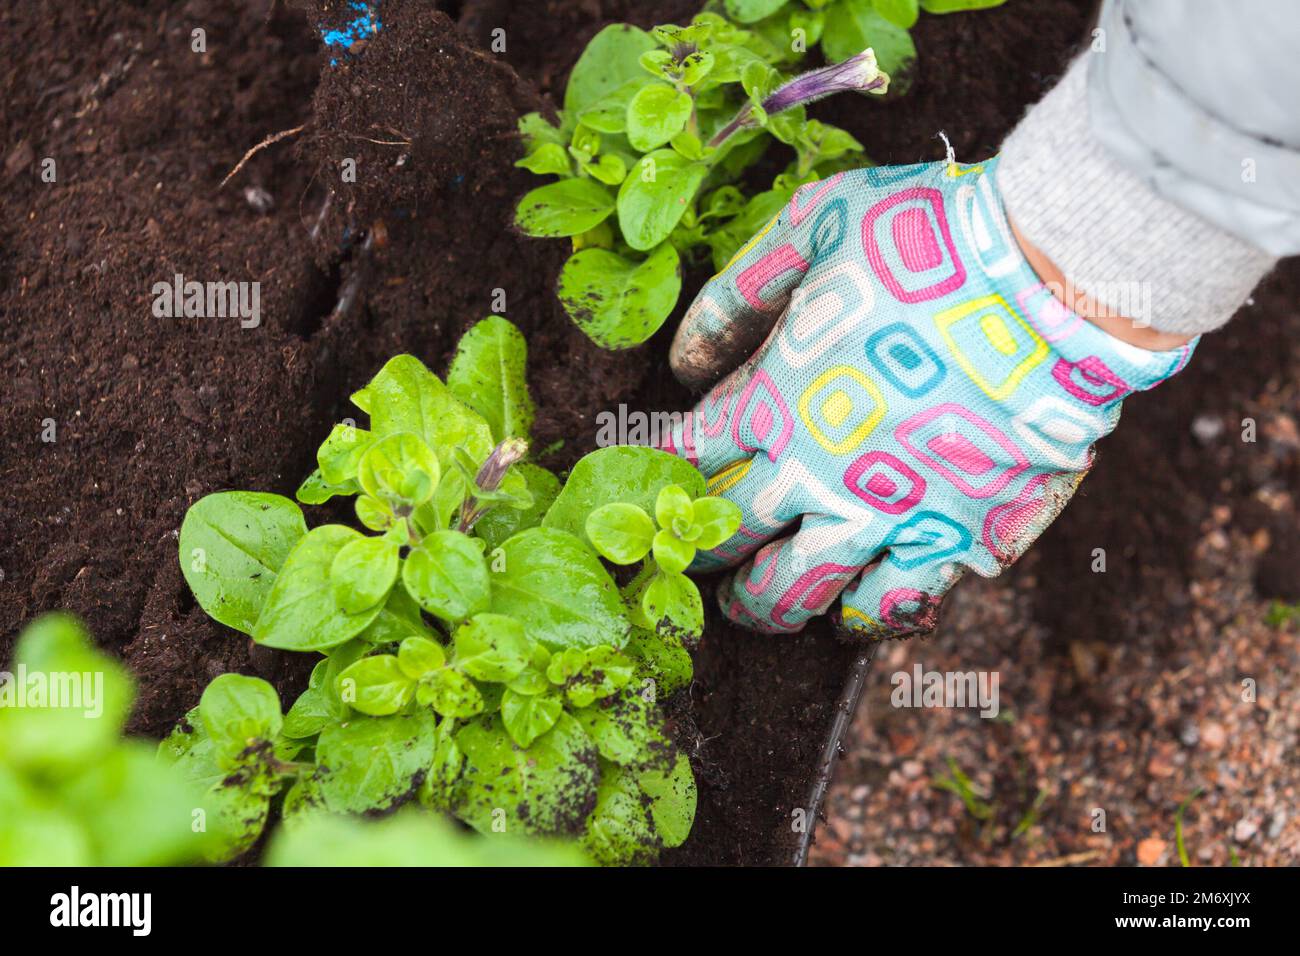 Hände eines Gärtners, der Setzlinge in dekorativen Töpfen pflanzt, Nahaufnahme mit selektivem Weichfokus Stockfoto